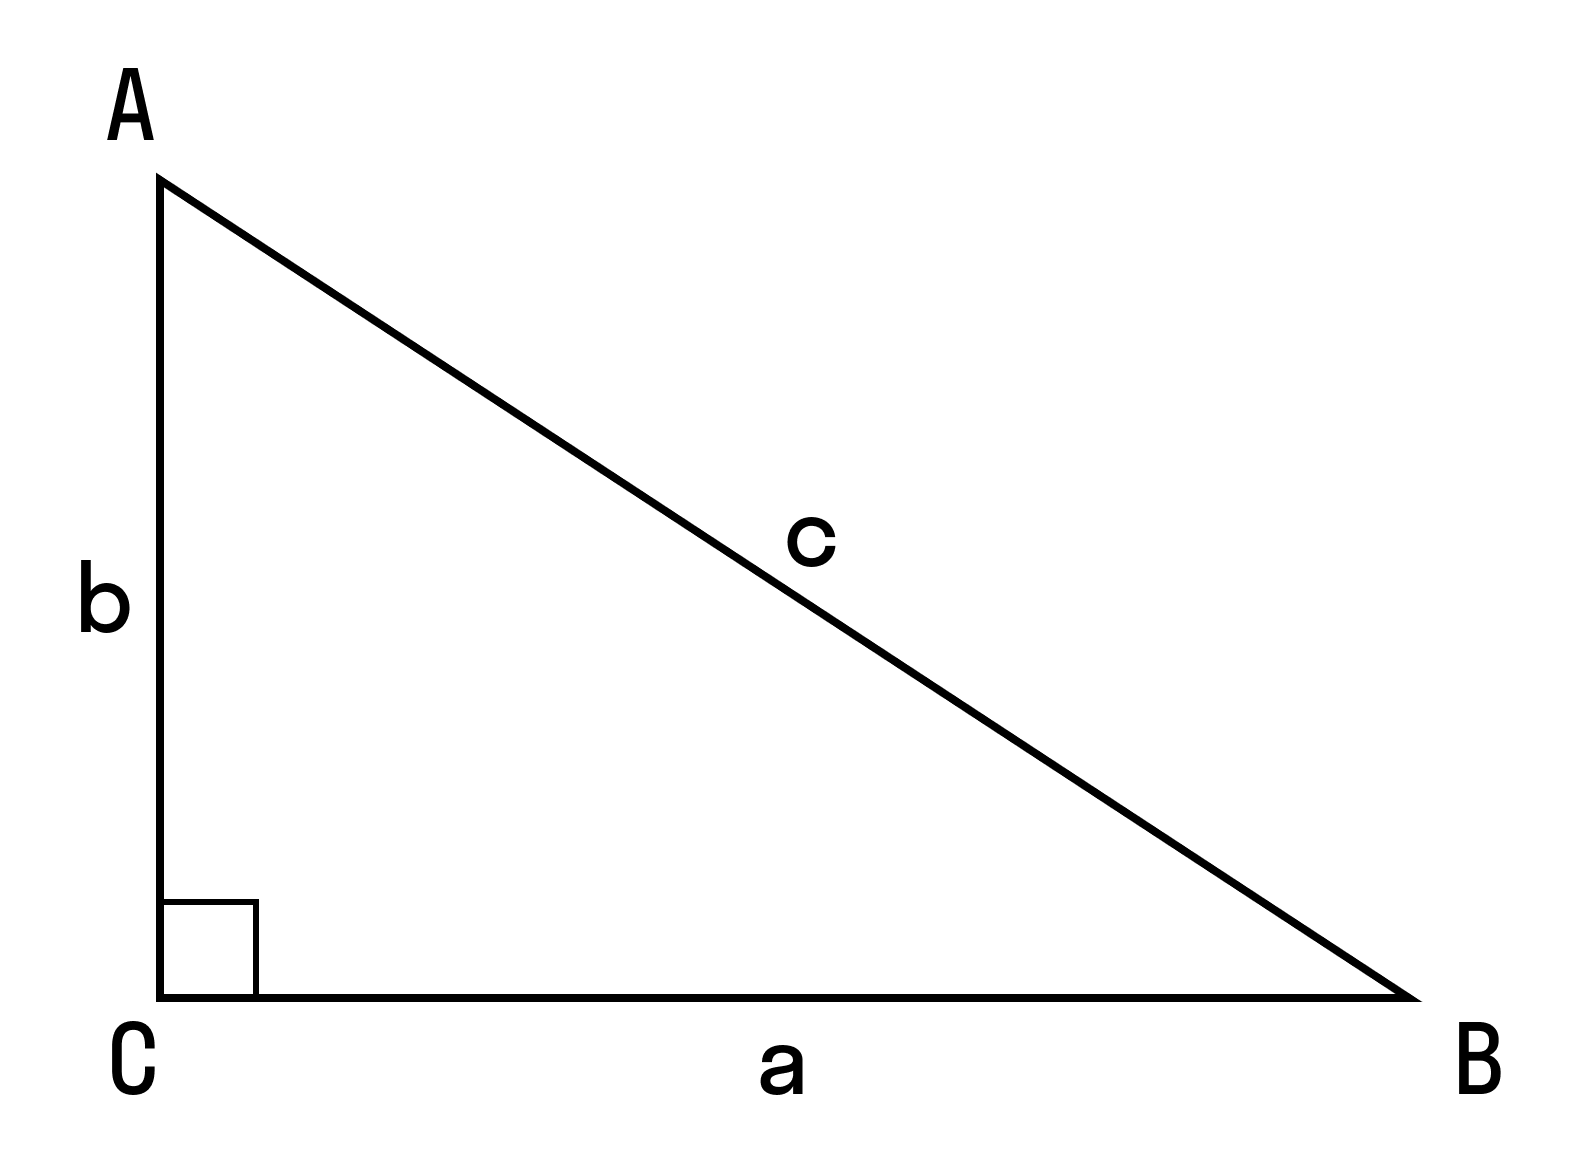 с помощью теоремы косинусов можно определить тупой угол или острый.